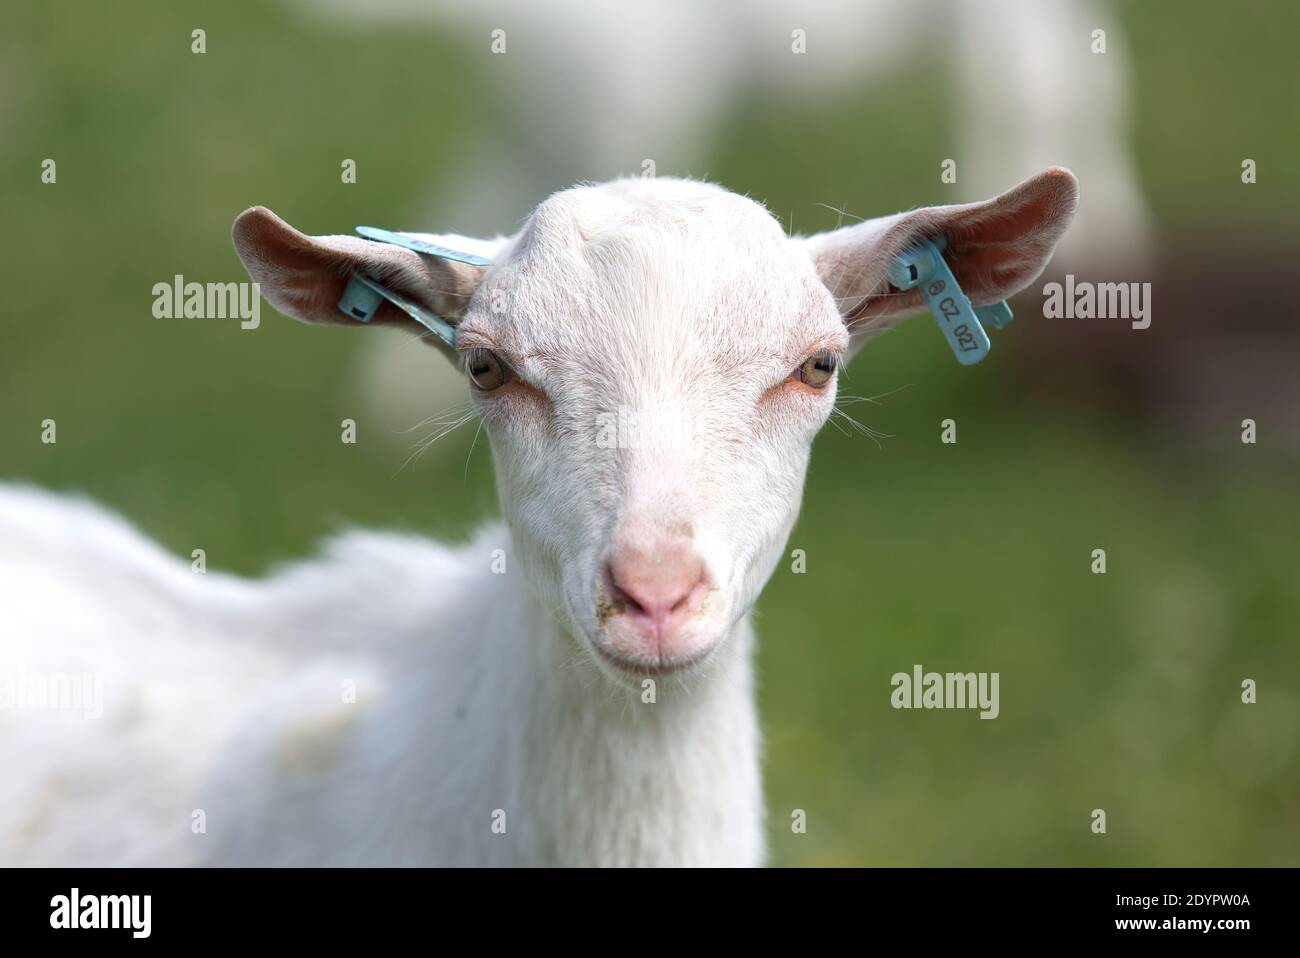 koza , plemeno bílá krátkosrstá , rohy , chov , domácí zvíře Stock Photo